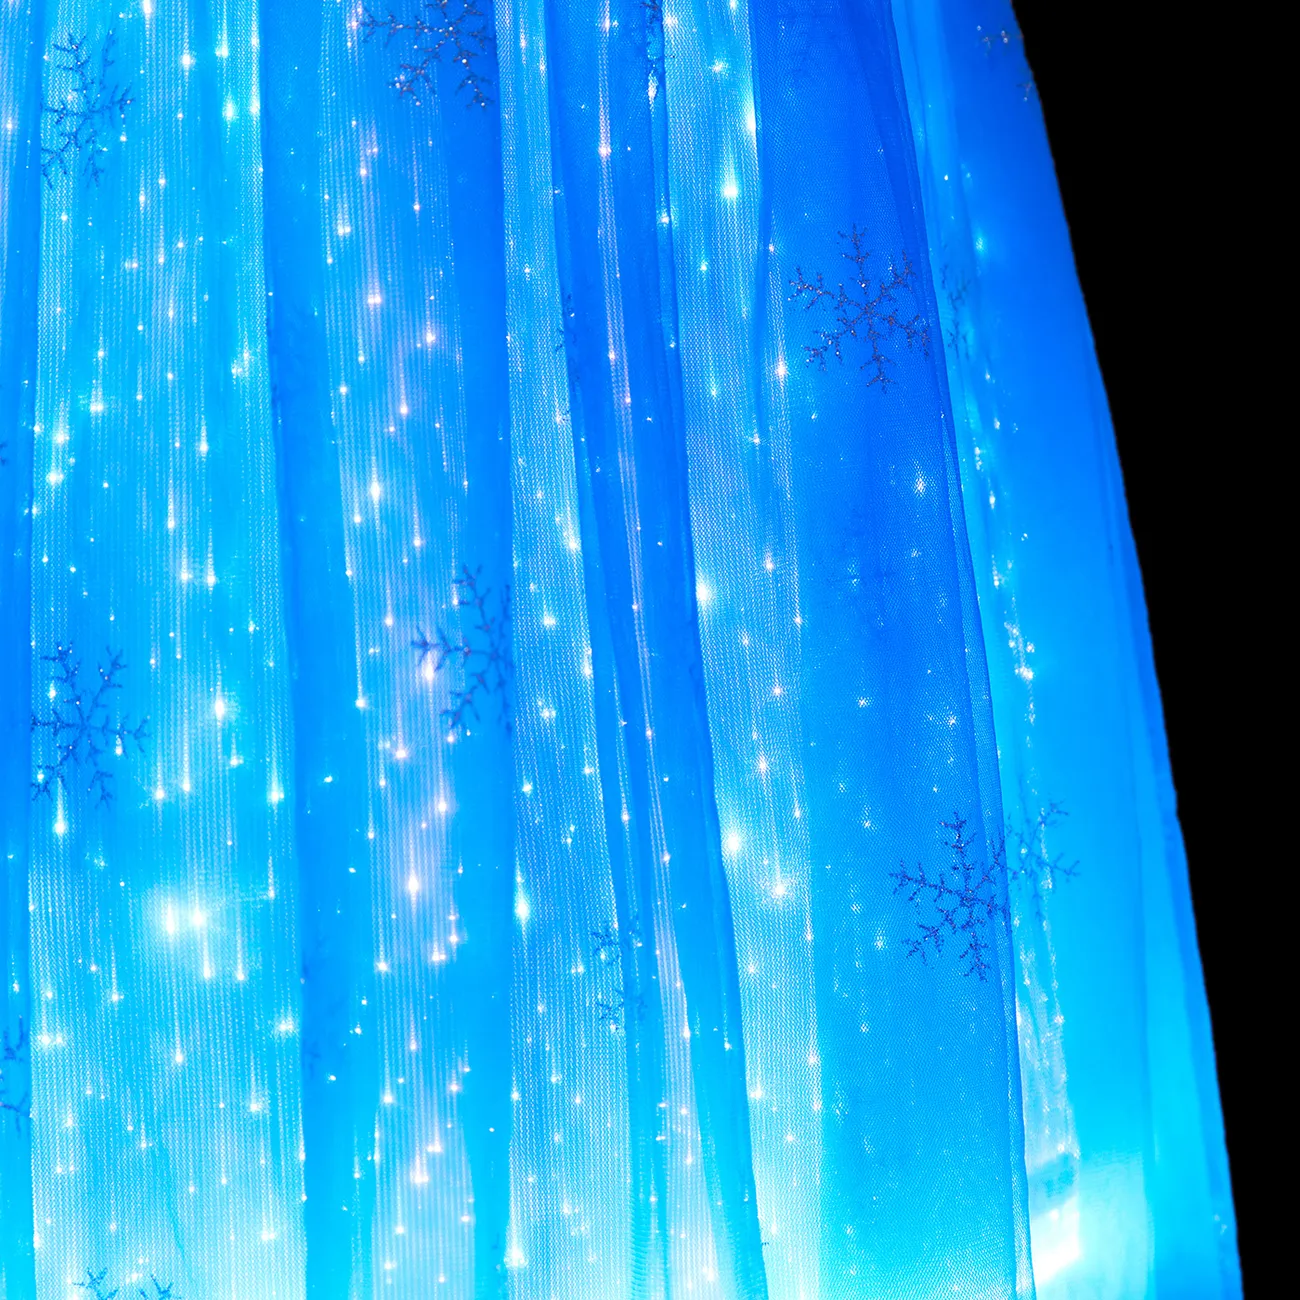 Go-Glow Light Up Vestido de festa azul com brilho de floco de neve sequined e cabo removível, incluindo controlador (bateria embutida) Azul Escuro / Branco big image 1